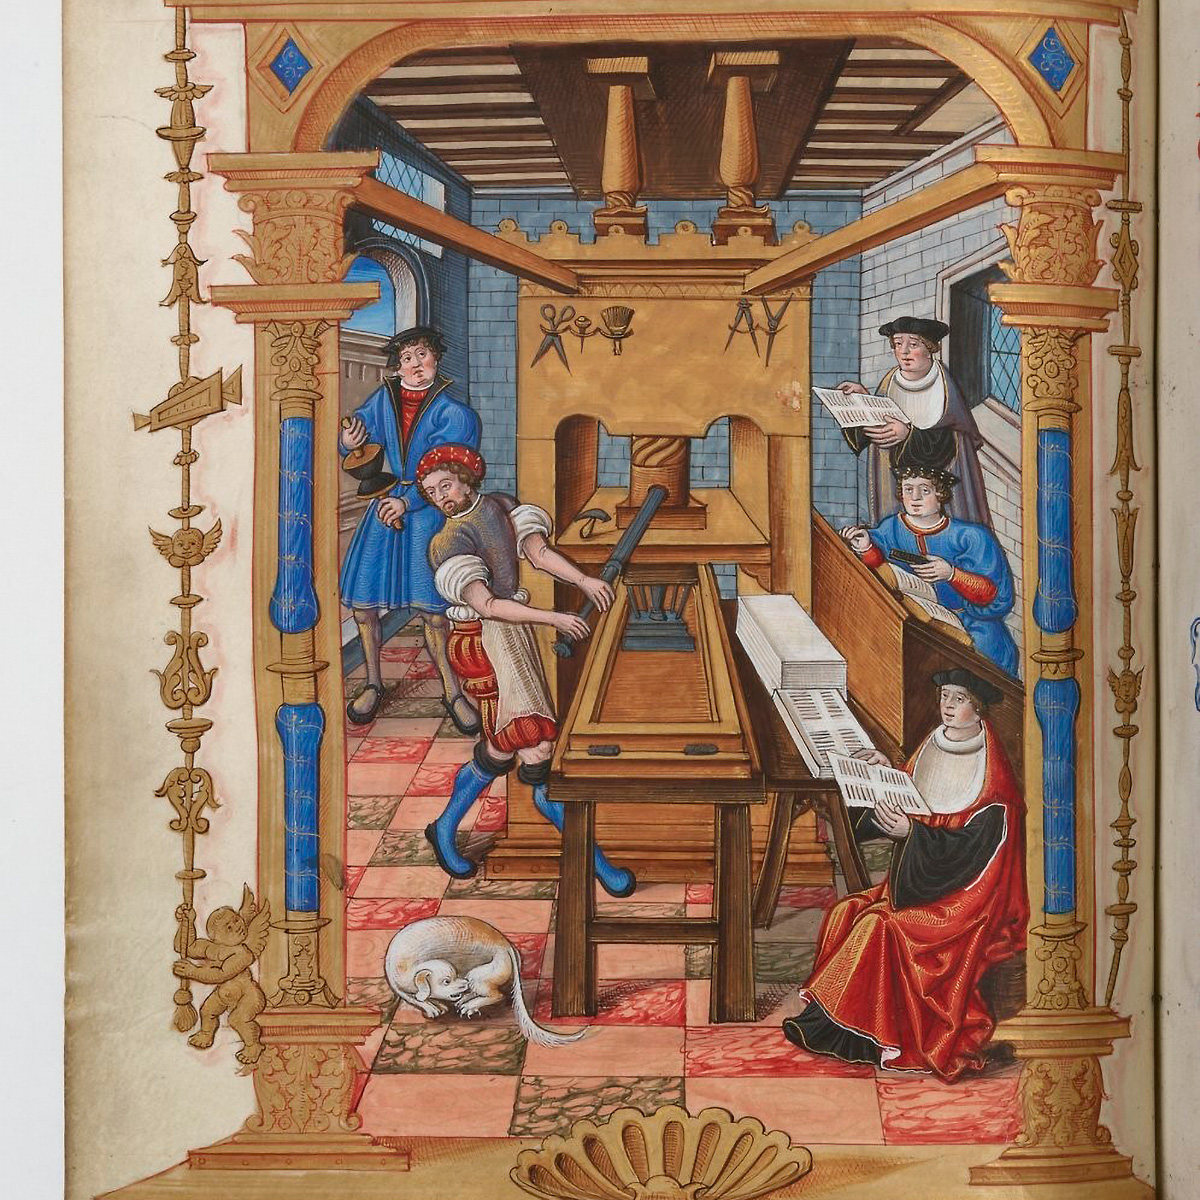 Печатный станок XVI века, иллюстрация из манускрипта 1537 года. Источник: Национальная библиотека Франции / gallica.bnf.fr